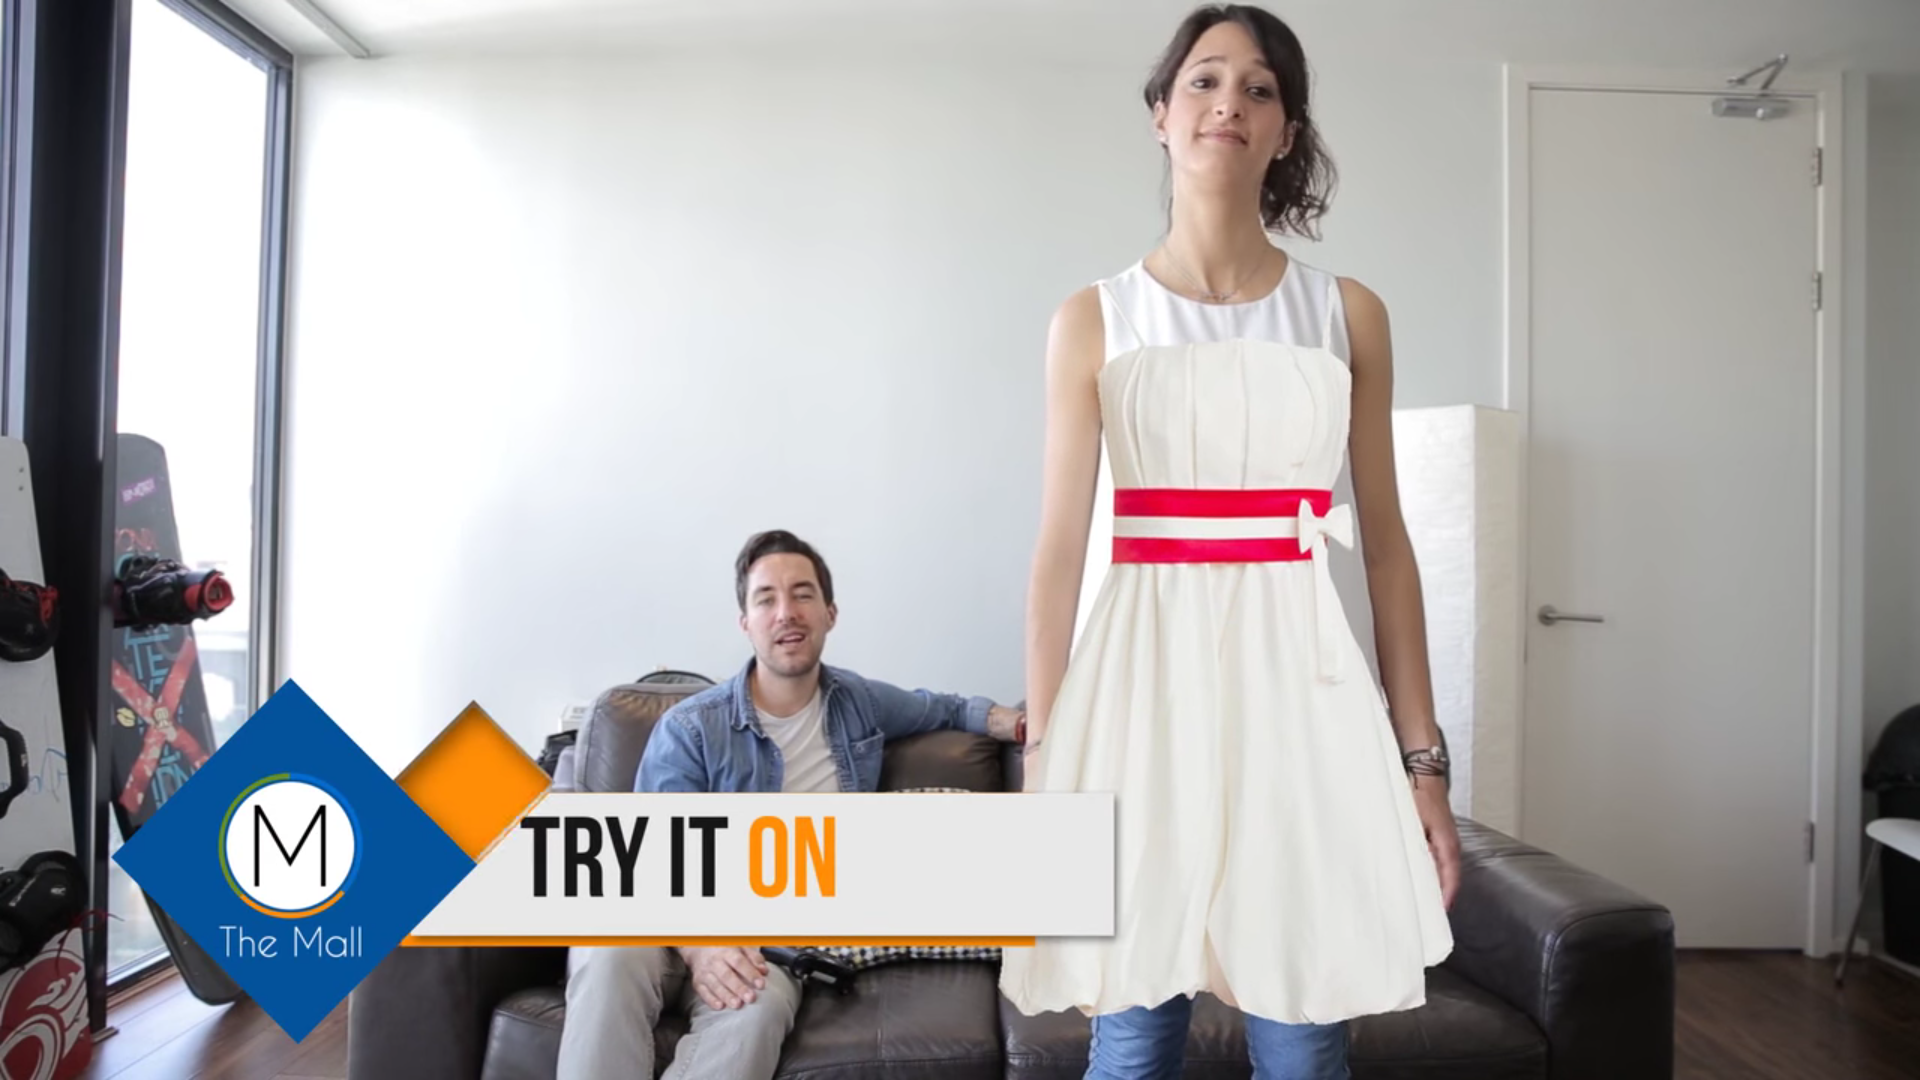 Esta app te permite probarte ropa de forma virtual